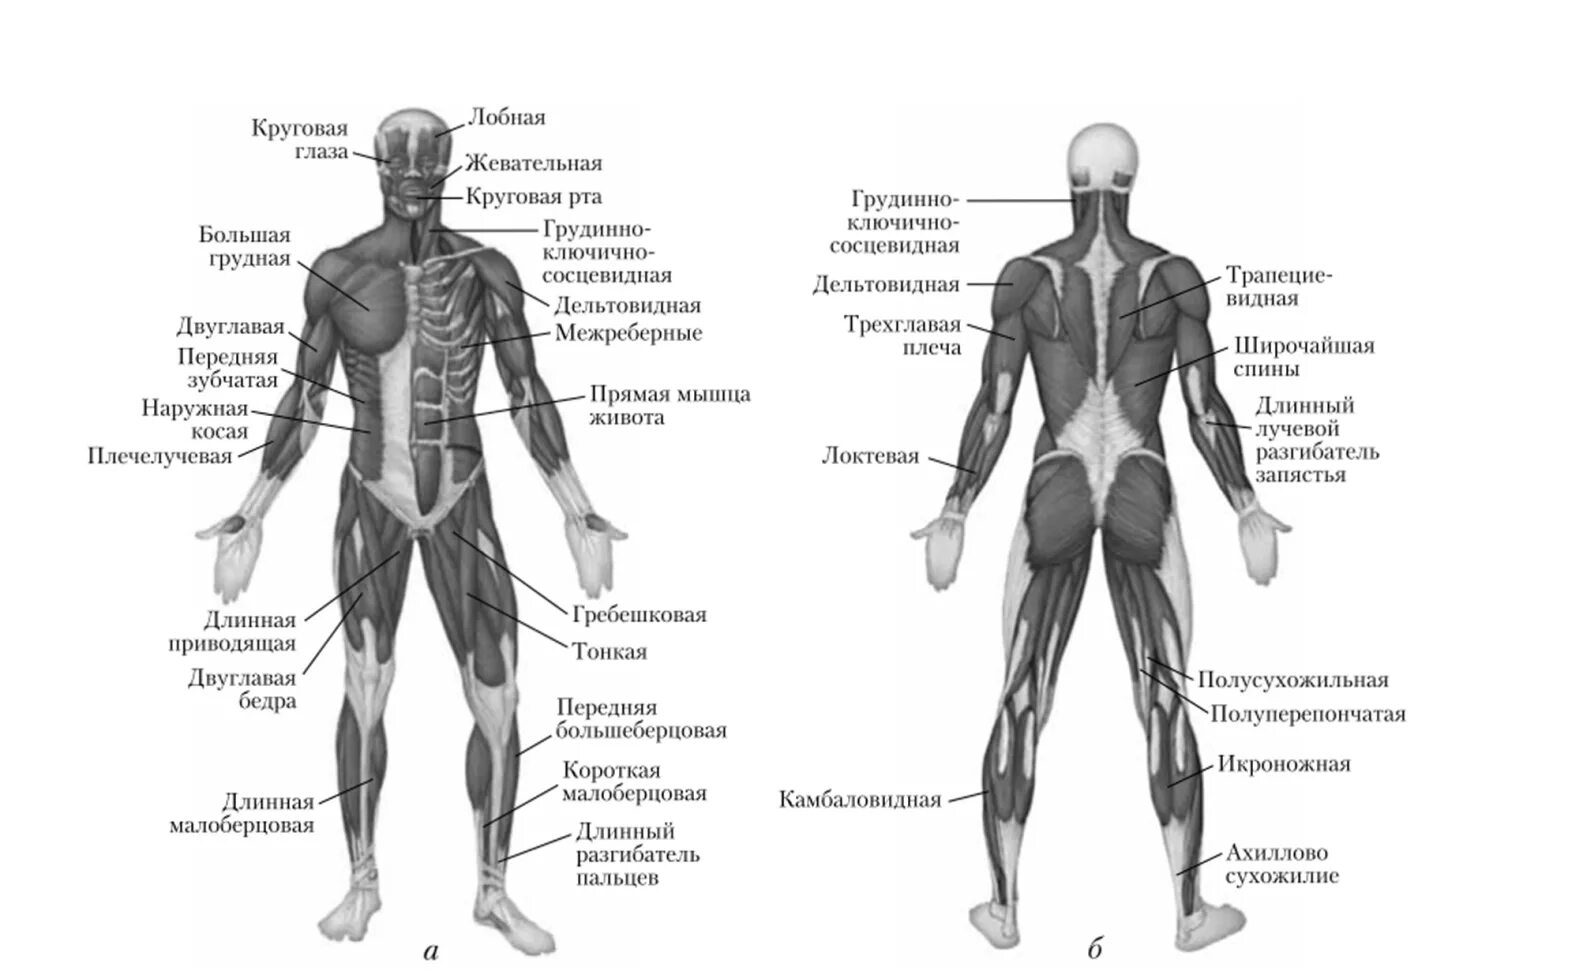 Описание мышц. Строение мышц человека вид сзади. Строение мышц человека спереди. Скелет мышцы человека вид сзади. Скелетные мышцы вид спереди и сзади.